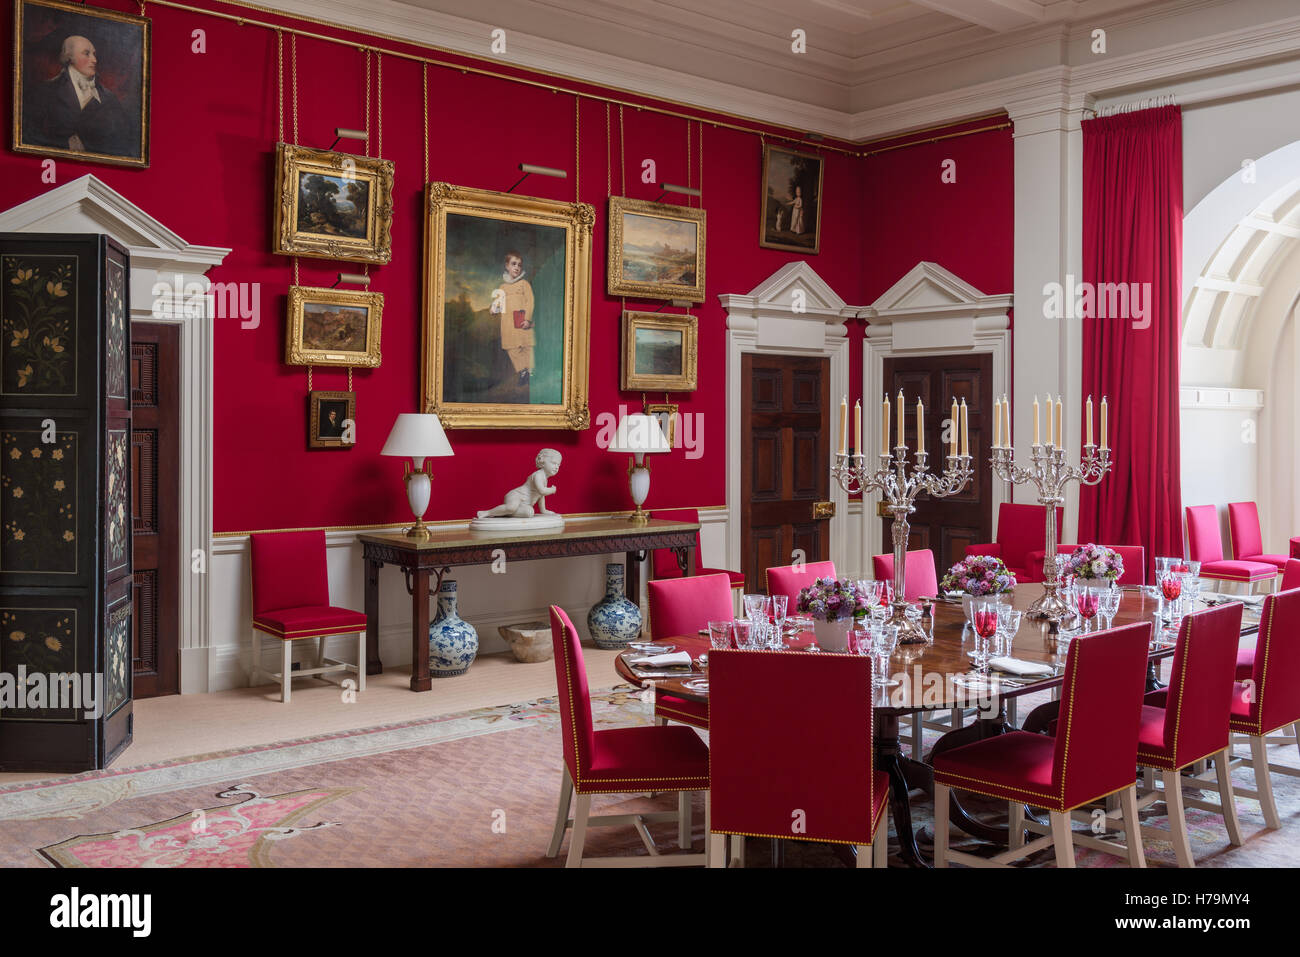 Salle à manger rouge en 18e siècle Dumfries house, Ayrshire, Scotland Banque D'Images